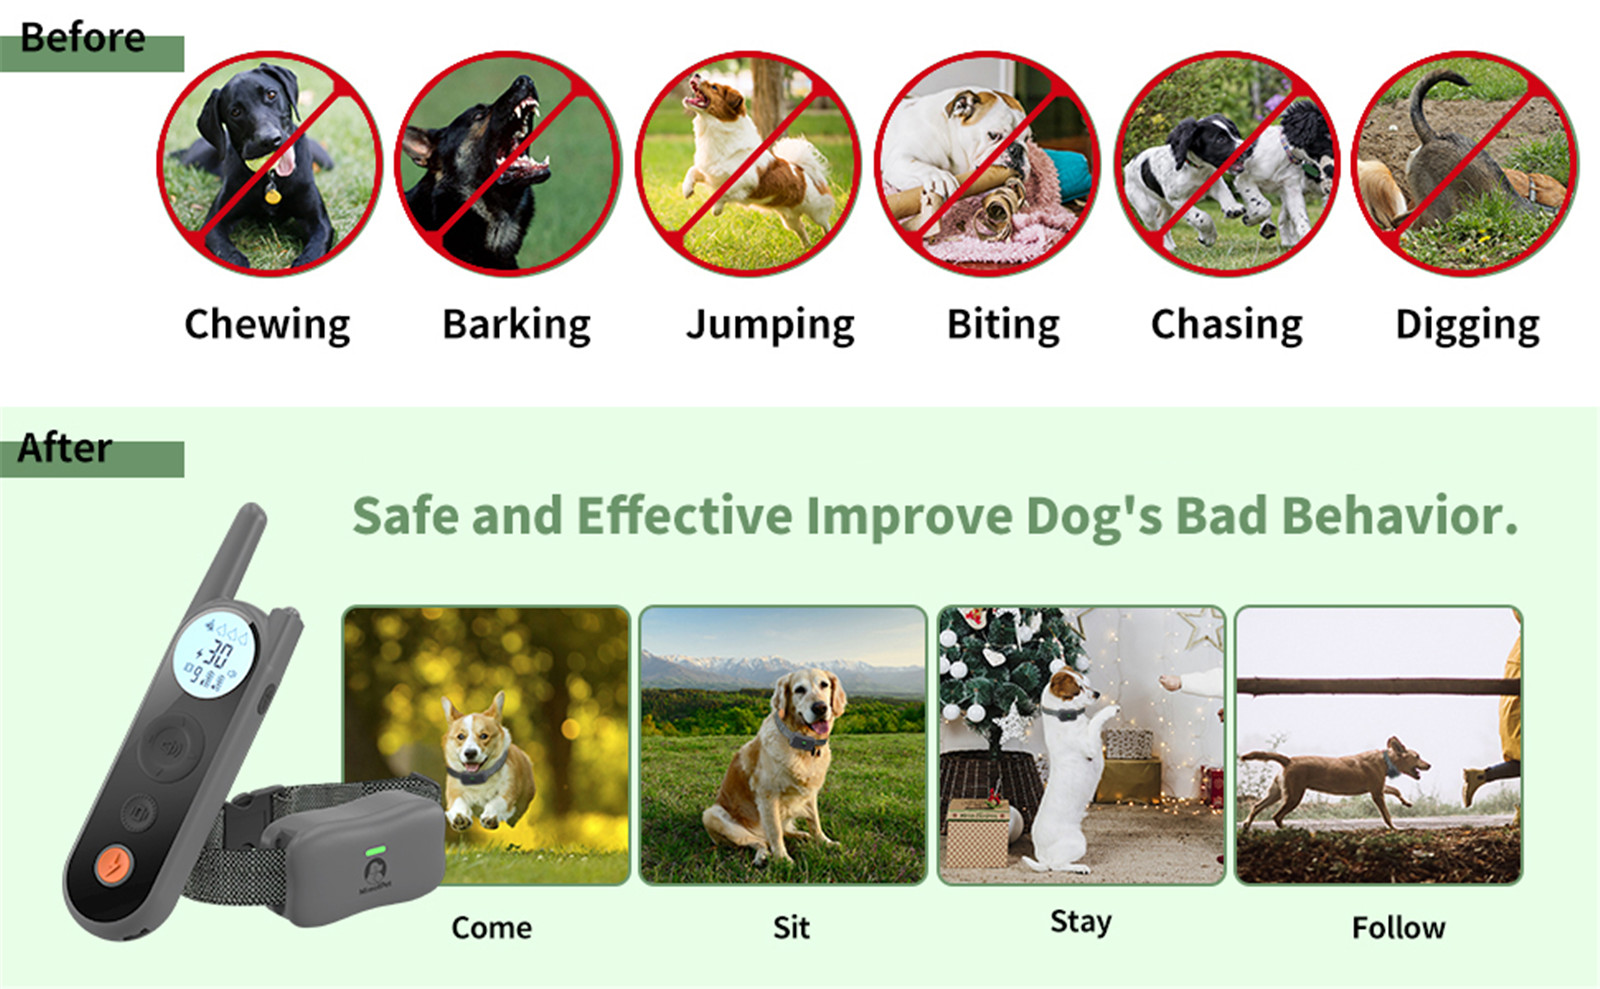 مقدمة حول طوق تدريب الكلاب موديل Mimofpet X1 01 (10)